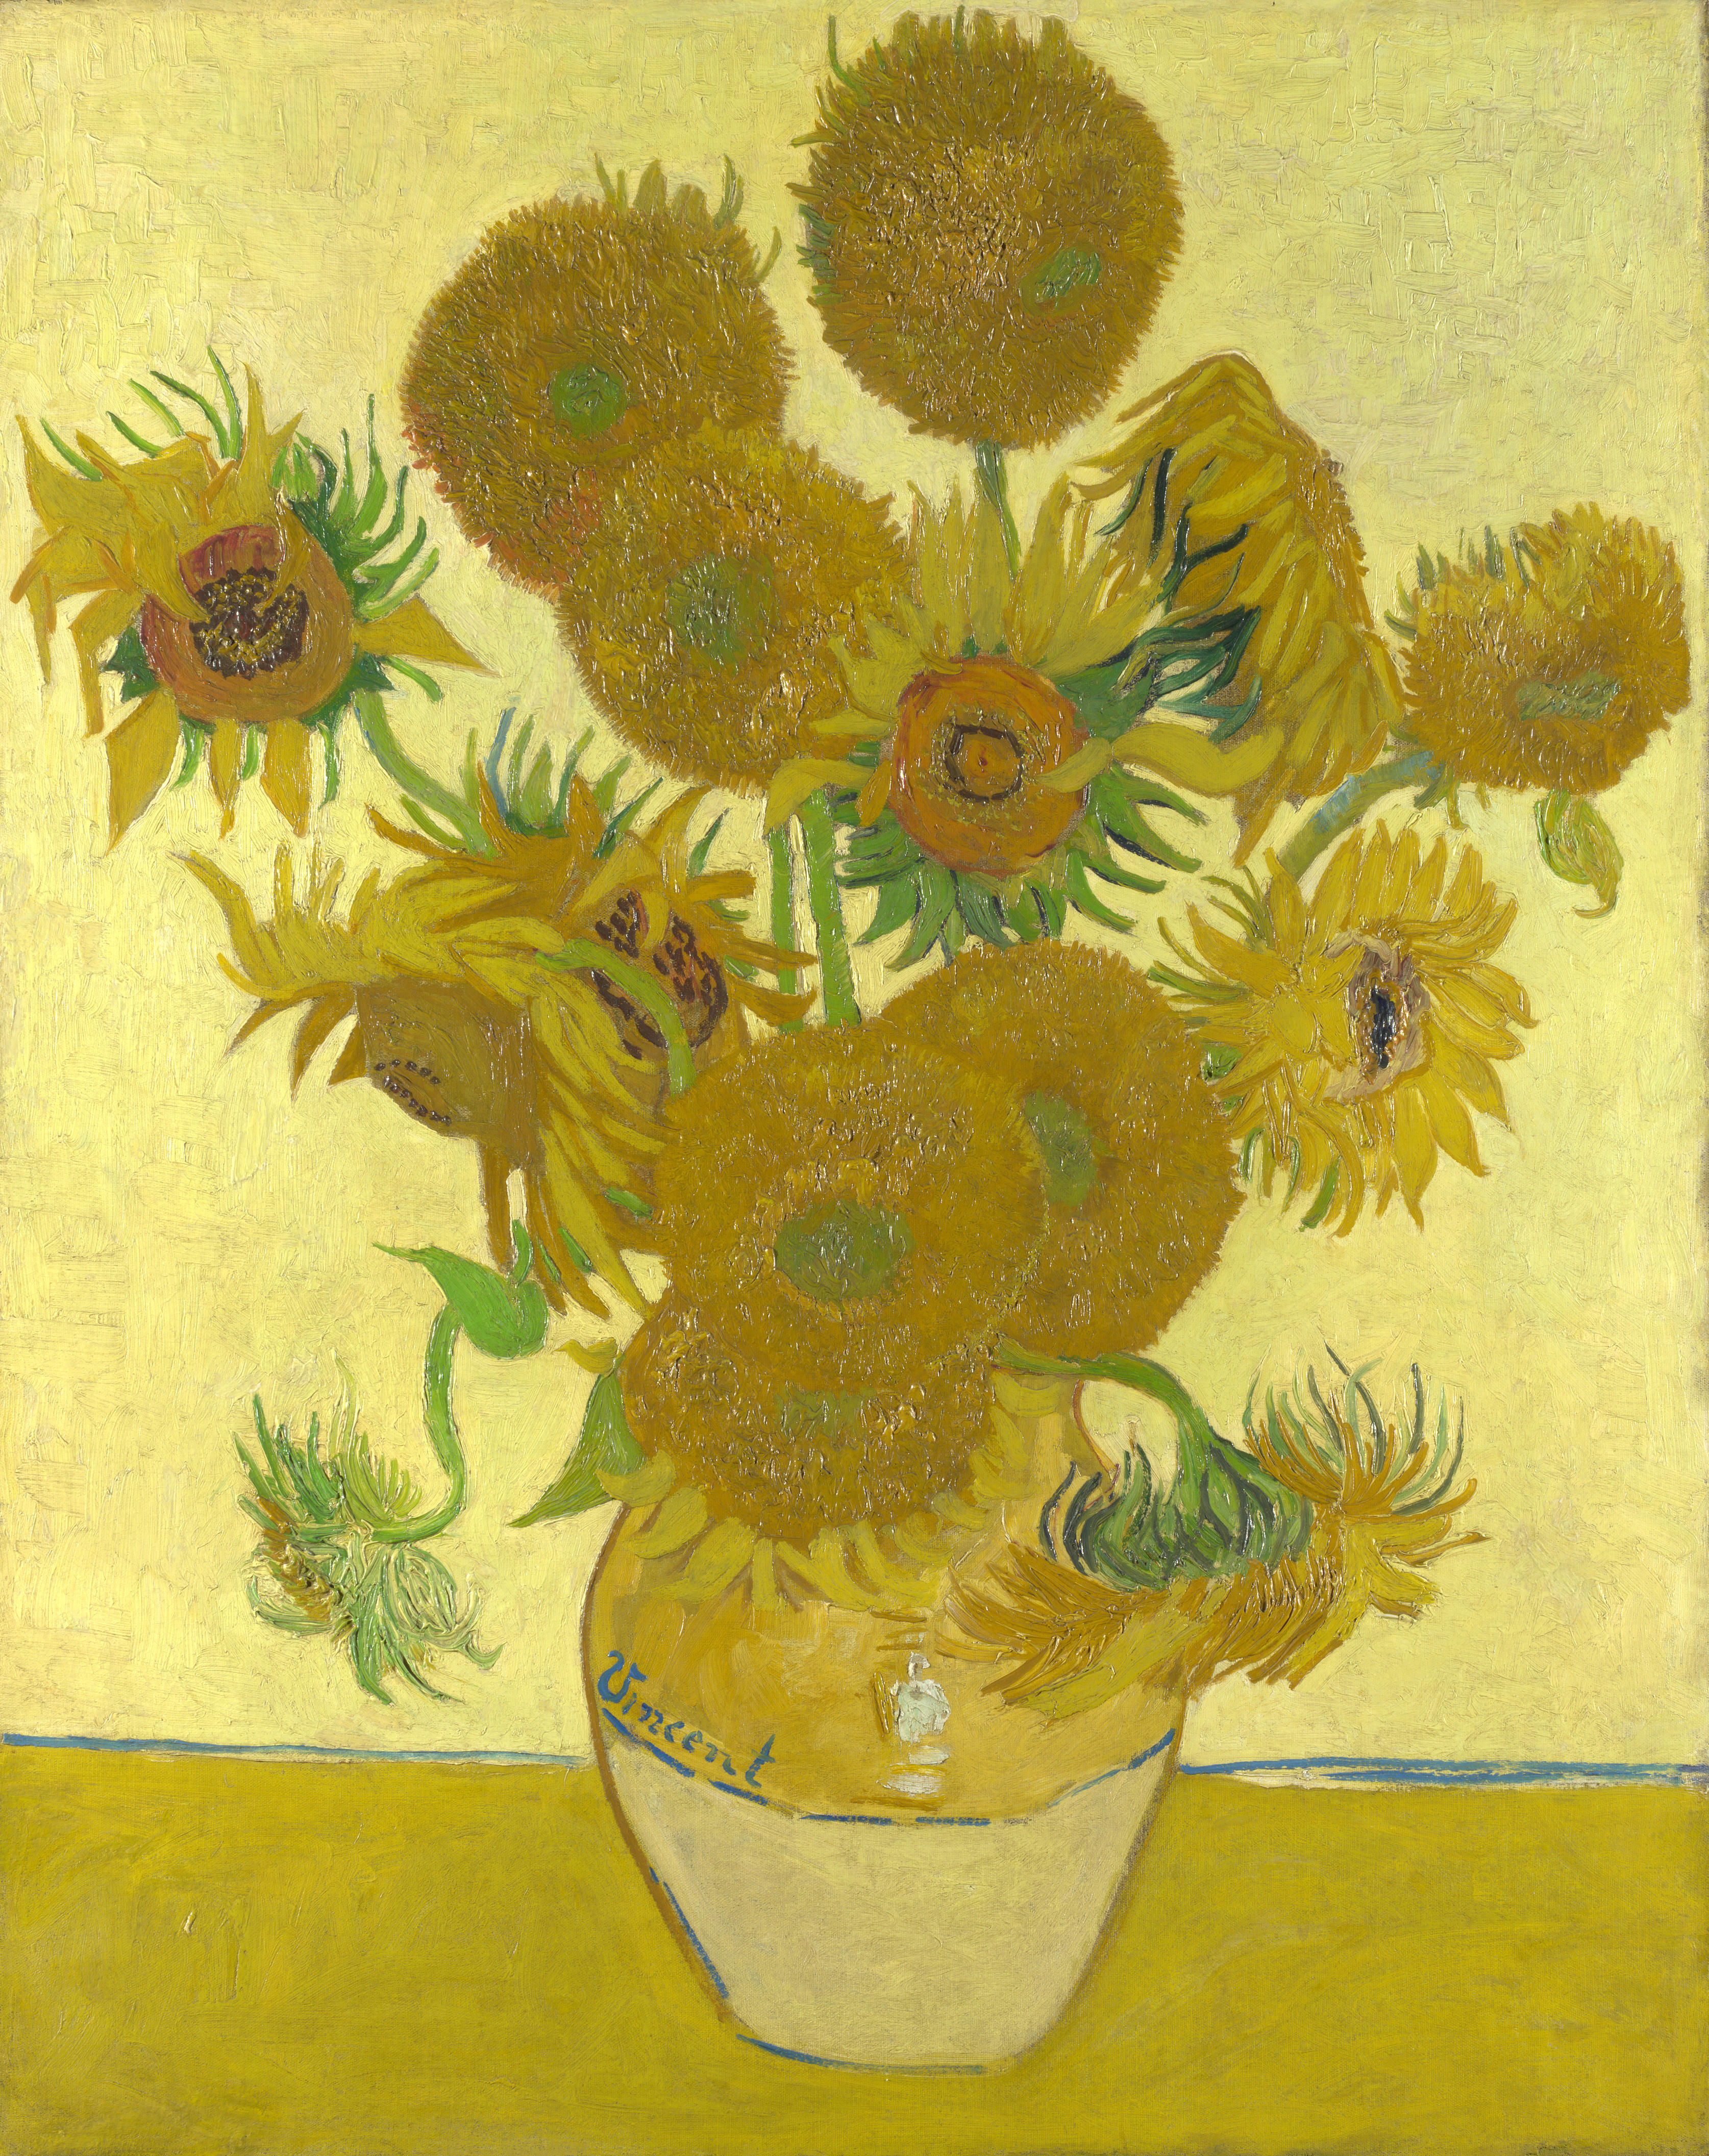 向日葵 by Vincent van Gogh - 1888 - 92.1 × 73 公分 